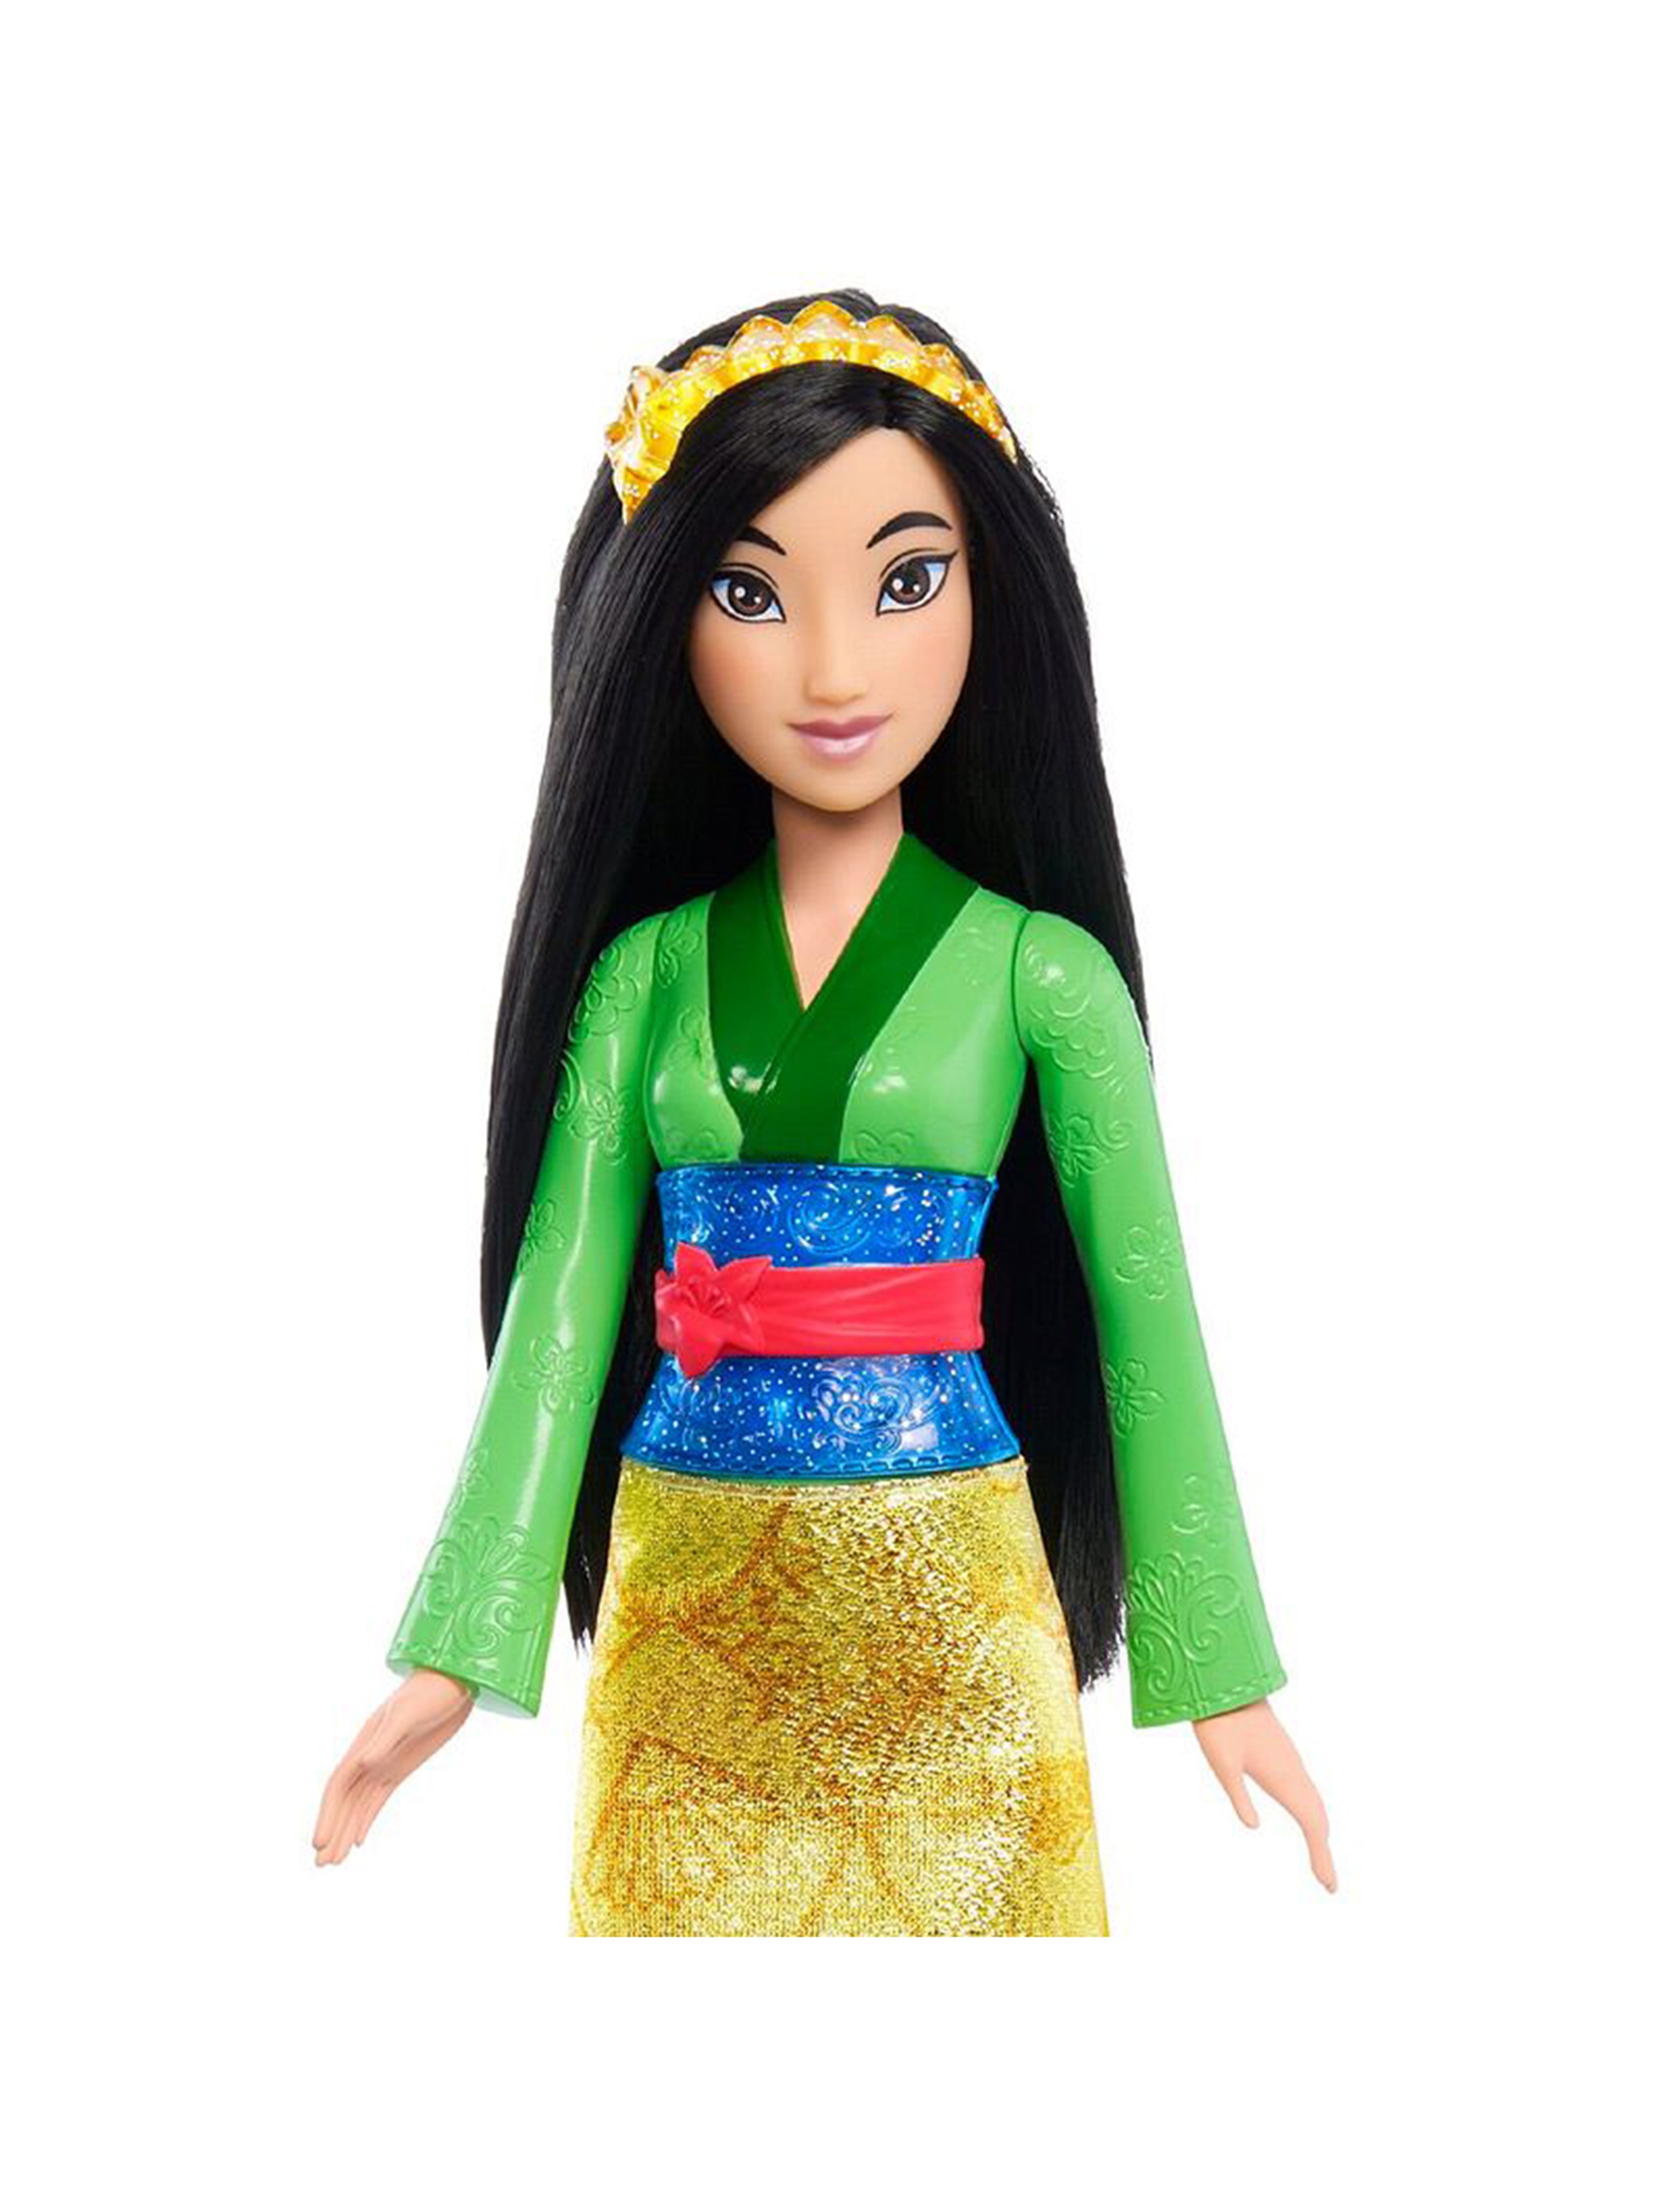 Lalka Disney Princess Mulan